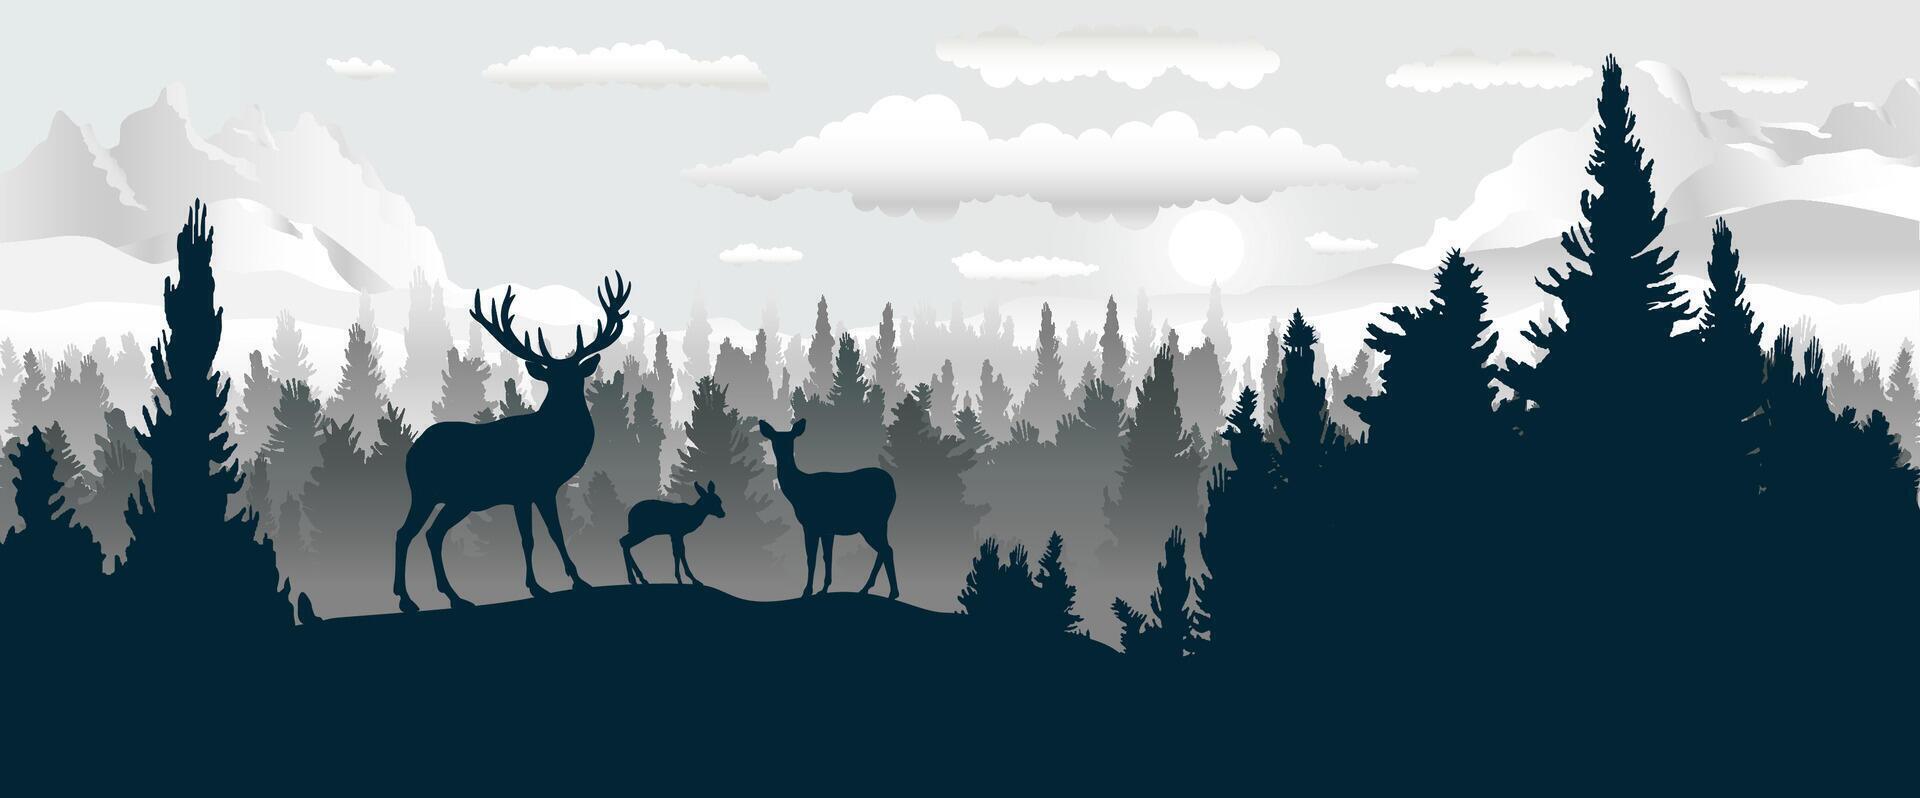 Cervi famiglia sagome, vettore illustrazione panoramico paesaggio di foresta.